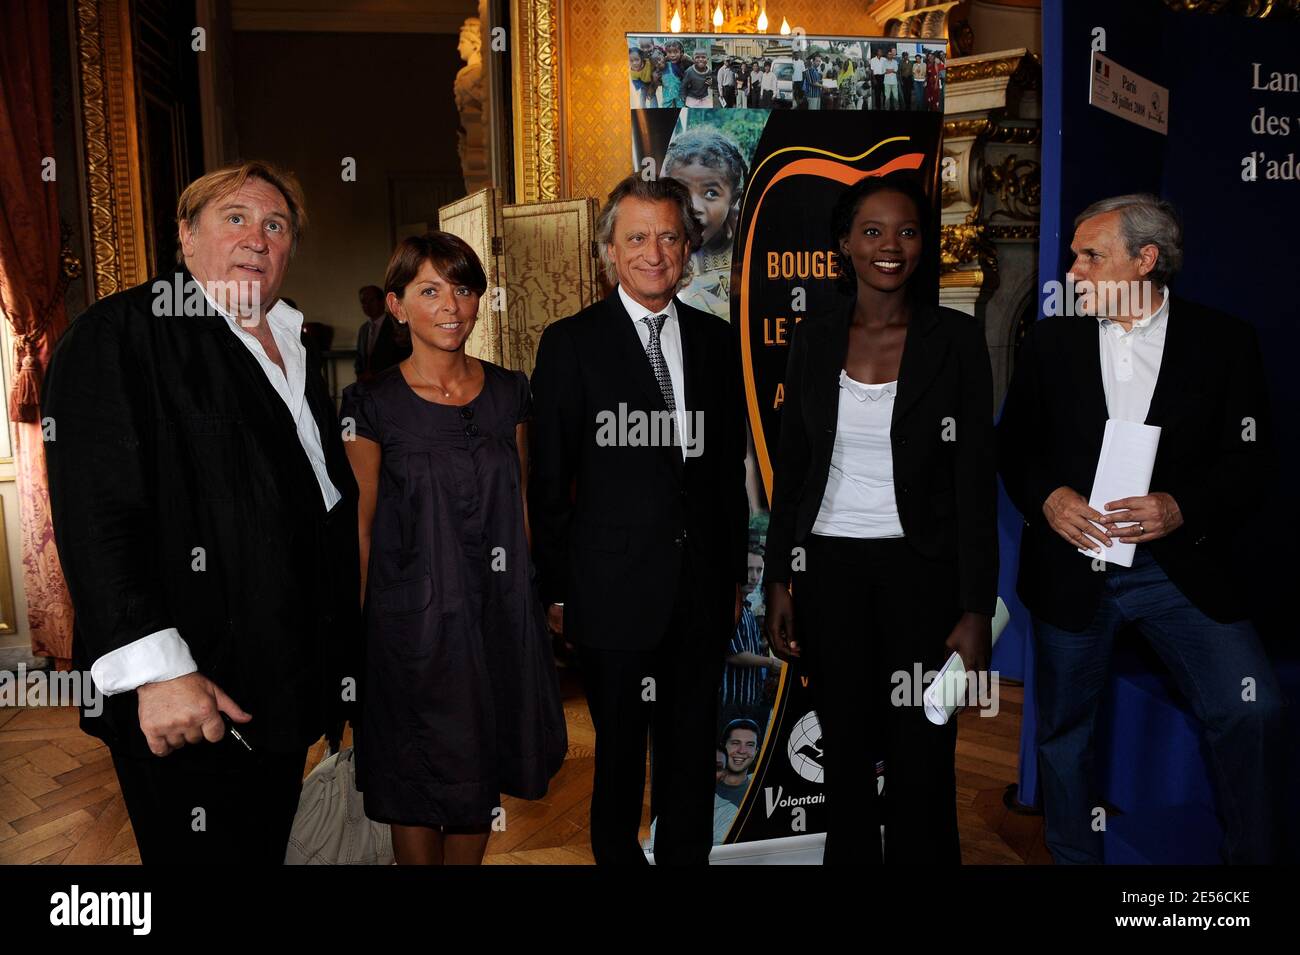 L'acteur Gerard Depardieu accompagné de Jean-Marie Colombani, Clemence  Fournier et Roger Zannier, rencontre le Ministre d'Etat, des Affaires  étrangères et européennes et des droits de l'Homme, Rama Yade, pour  soutenir le plan